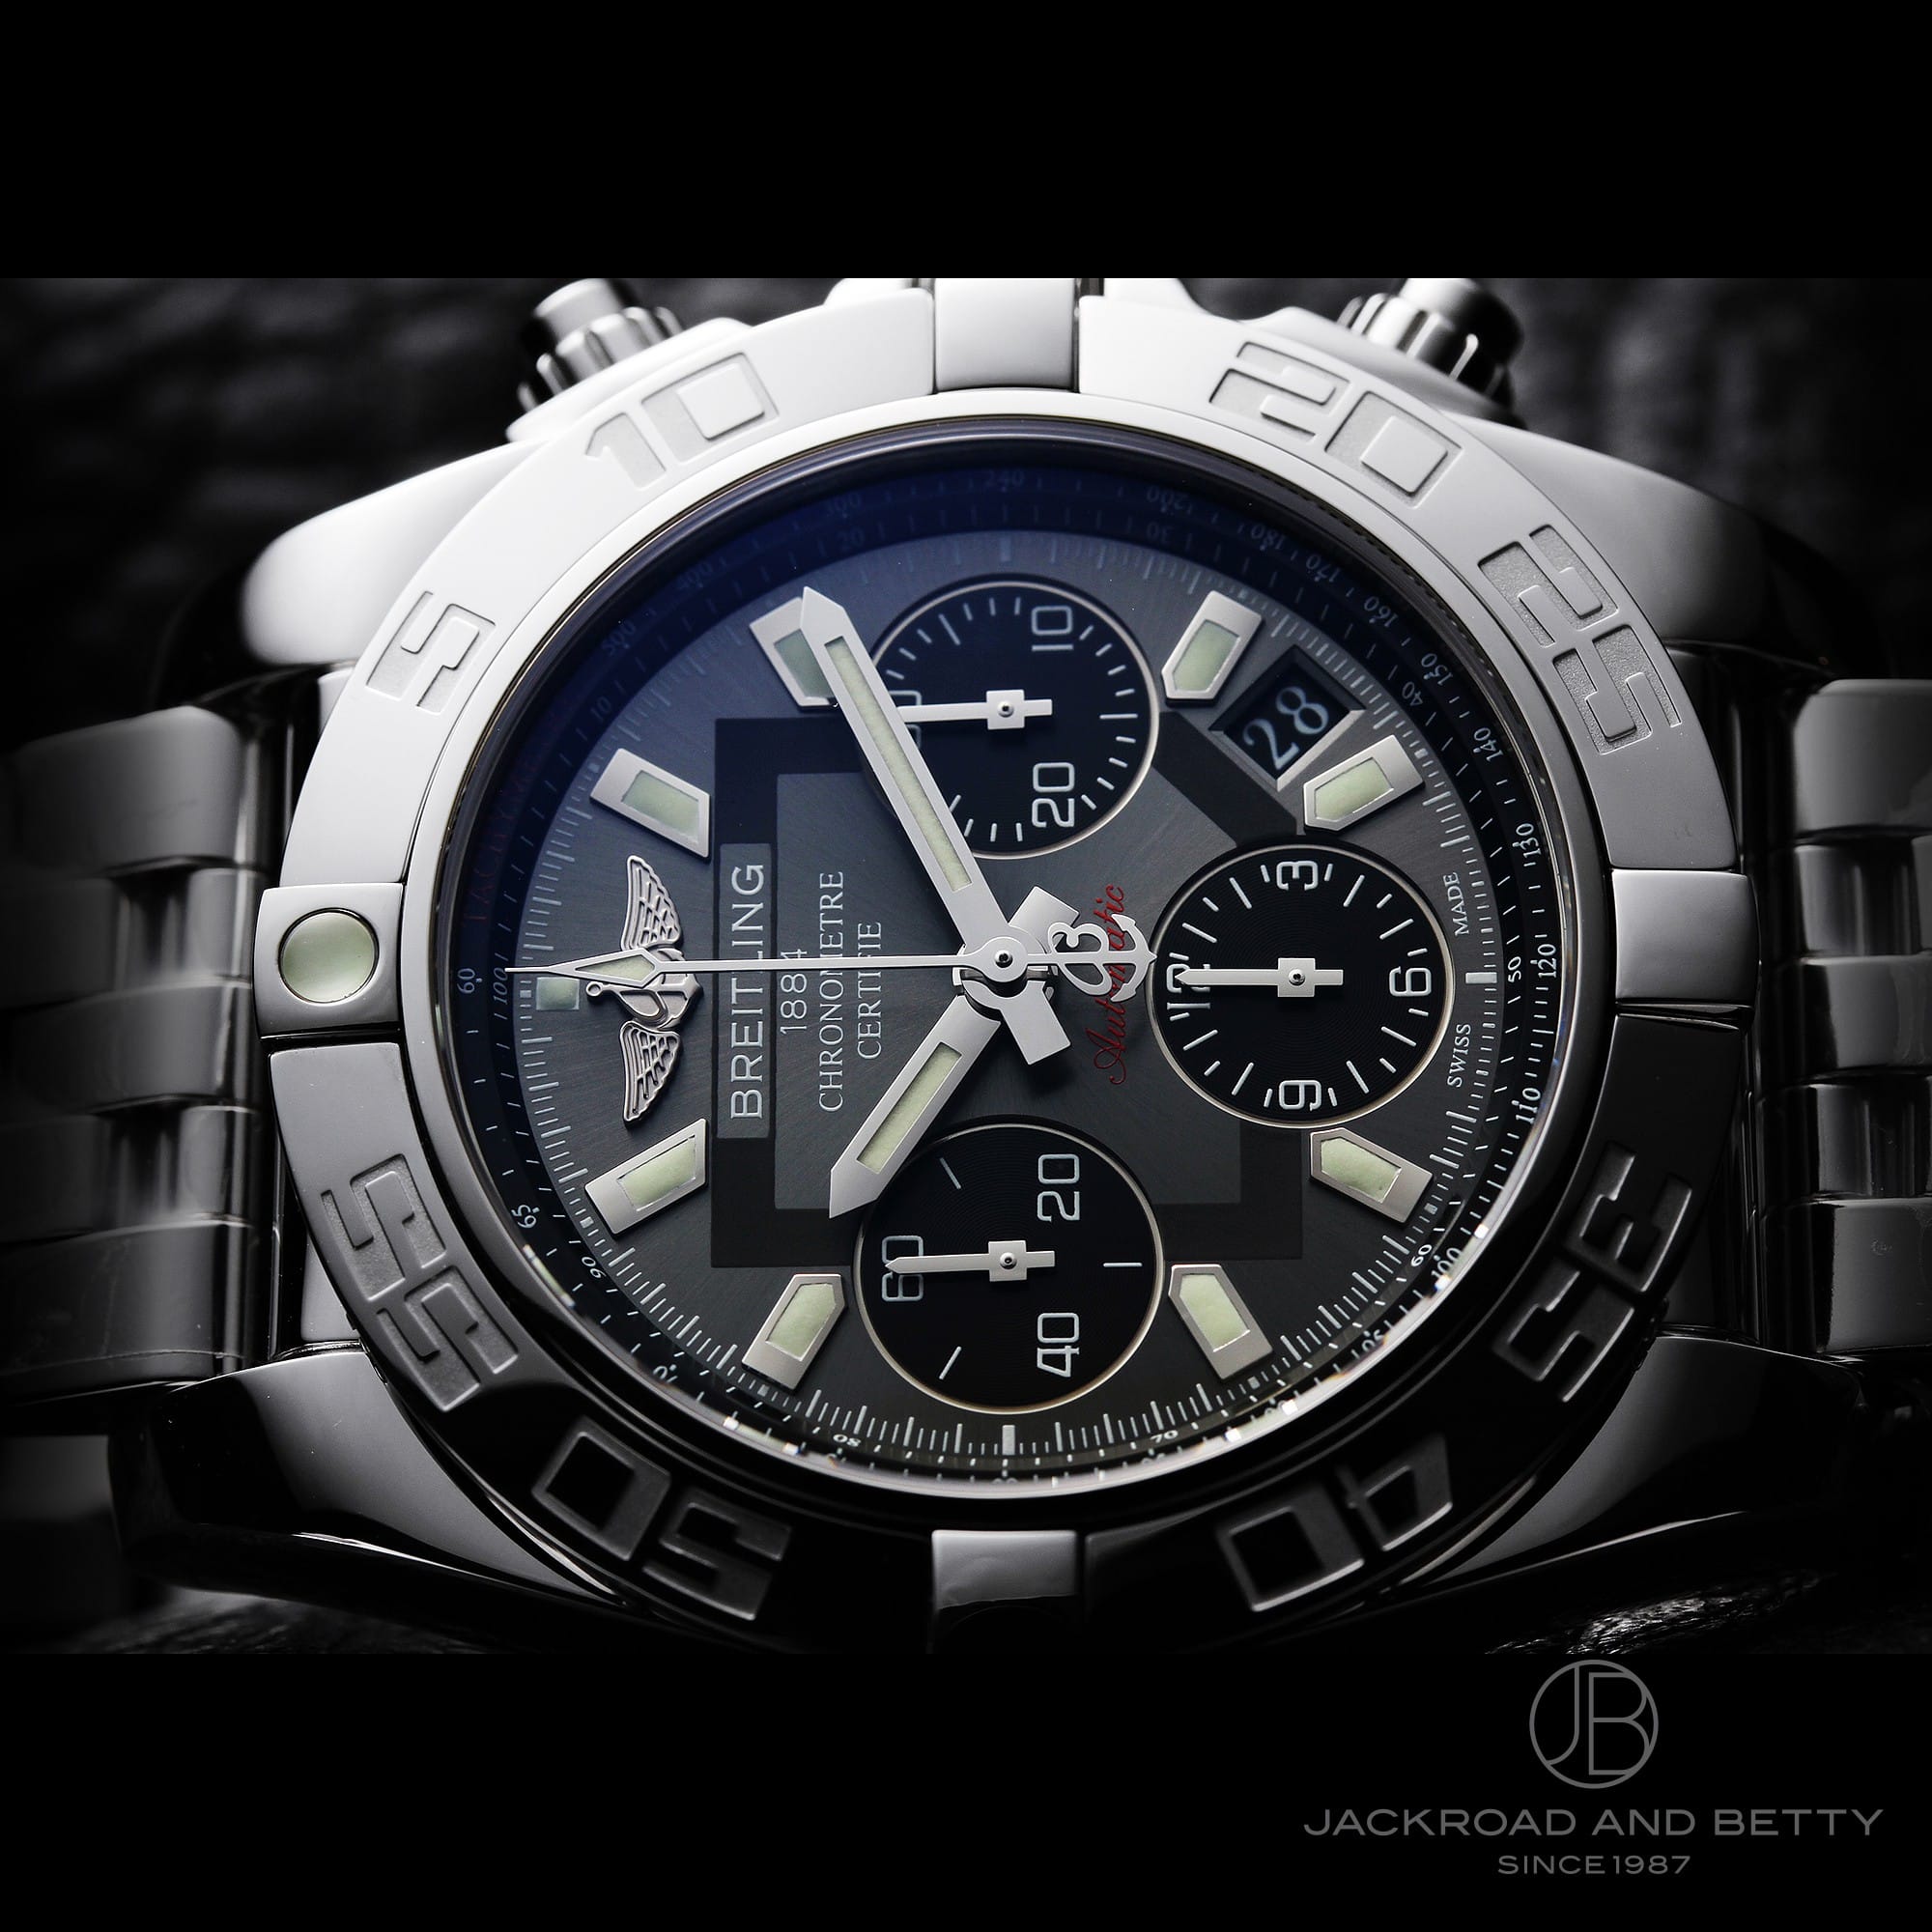 ブライトリング 腕時計 A014F54PA (AB0140)